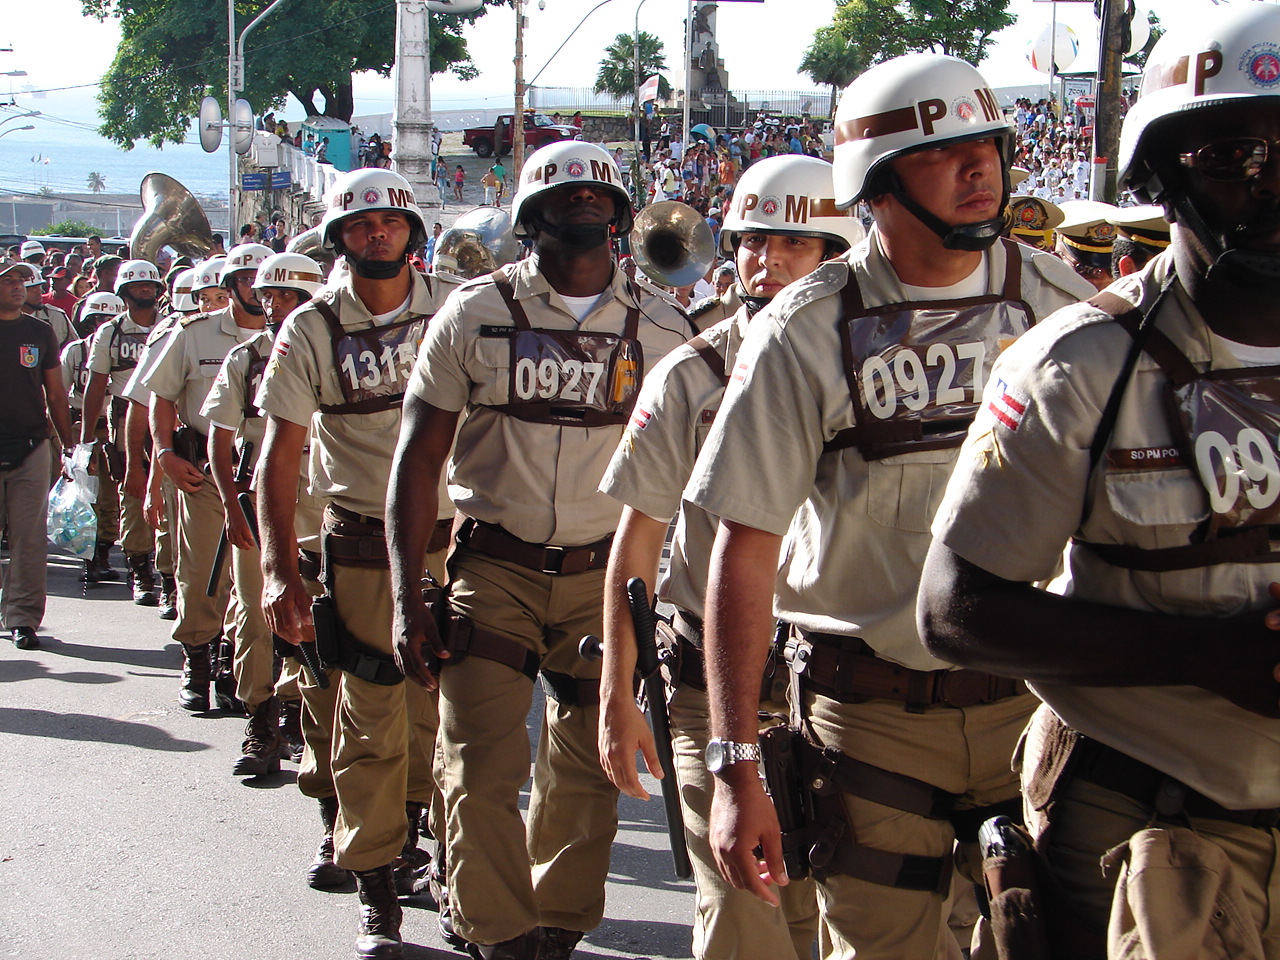 Anunciado novo Concurso para a Polícia Militar da Bahia em 2017